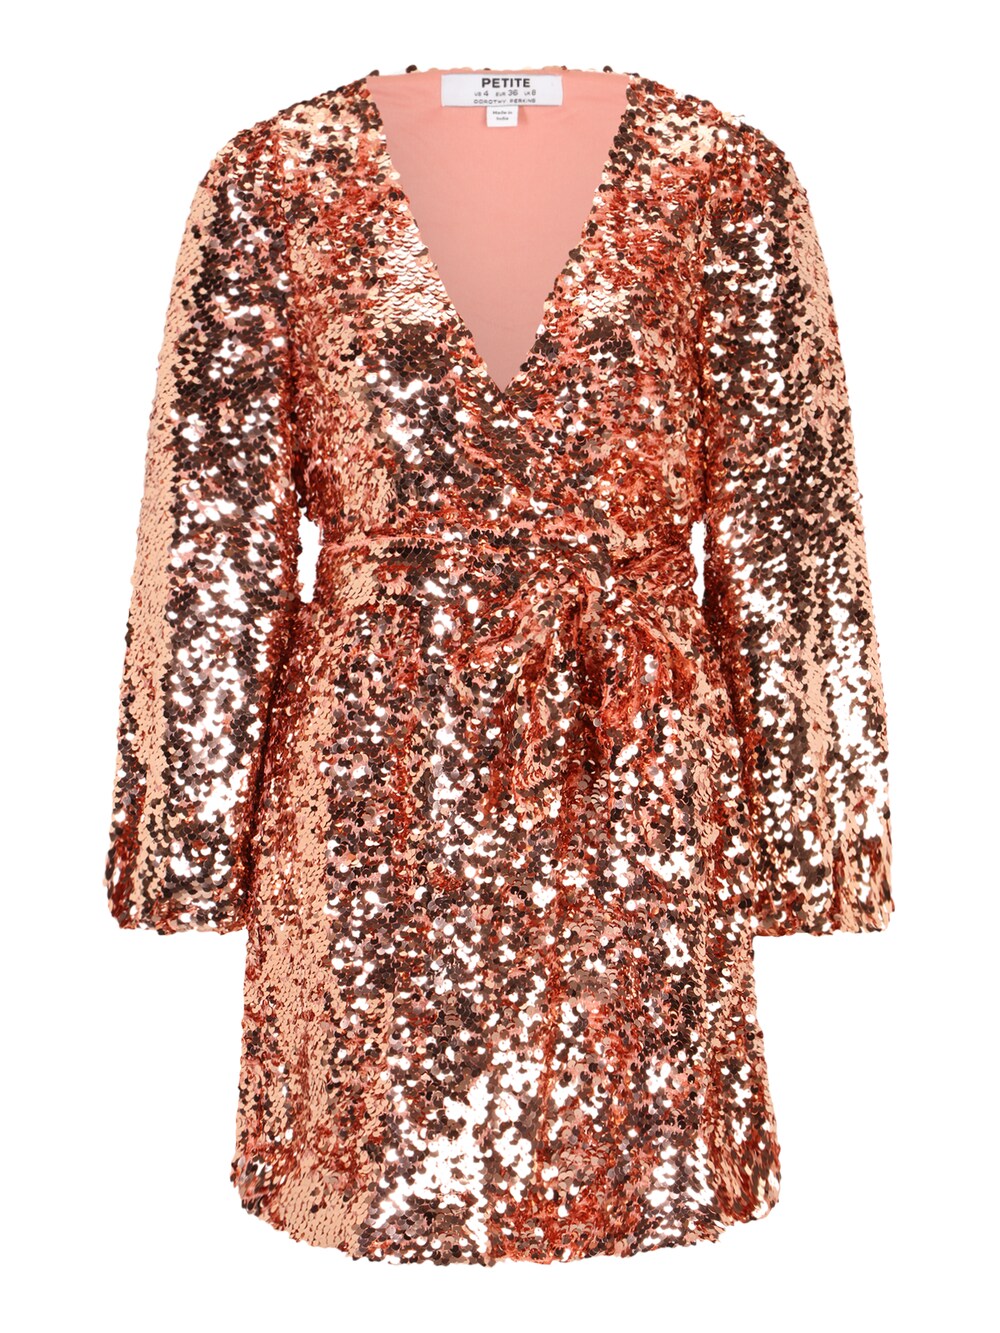 Вечернее платье Dorothy Perkins, розовое золото